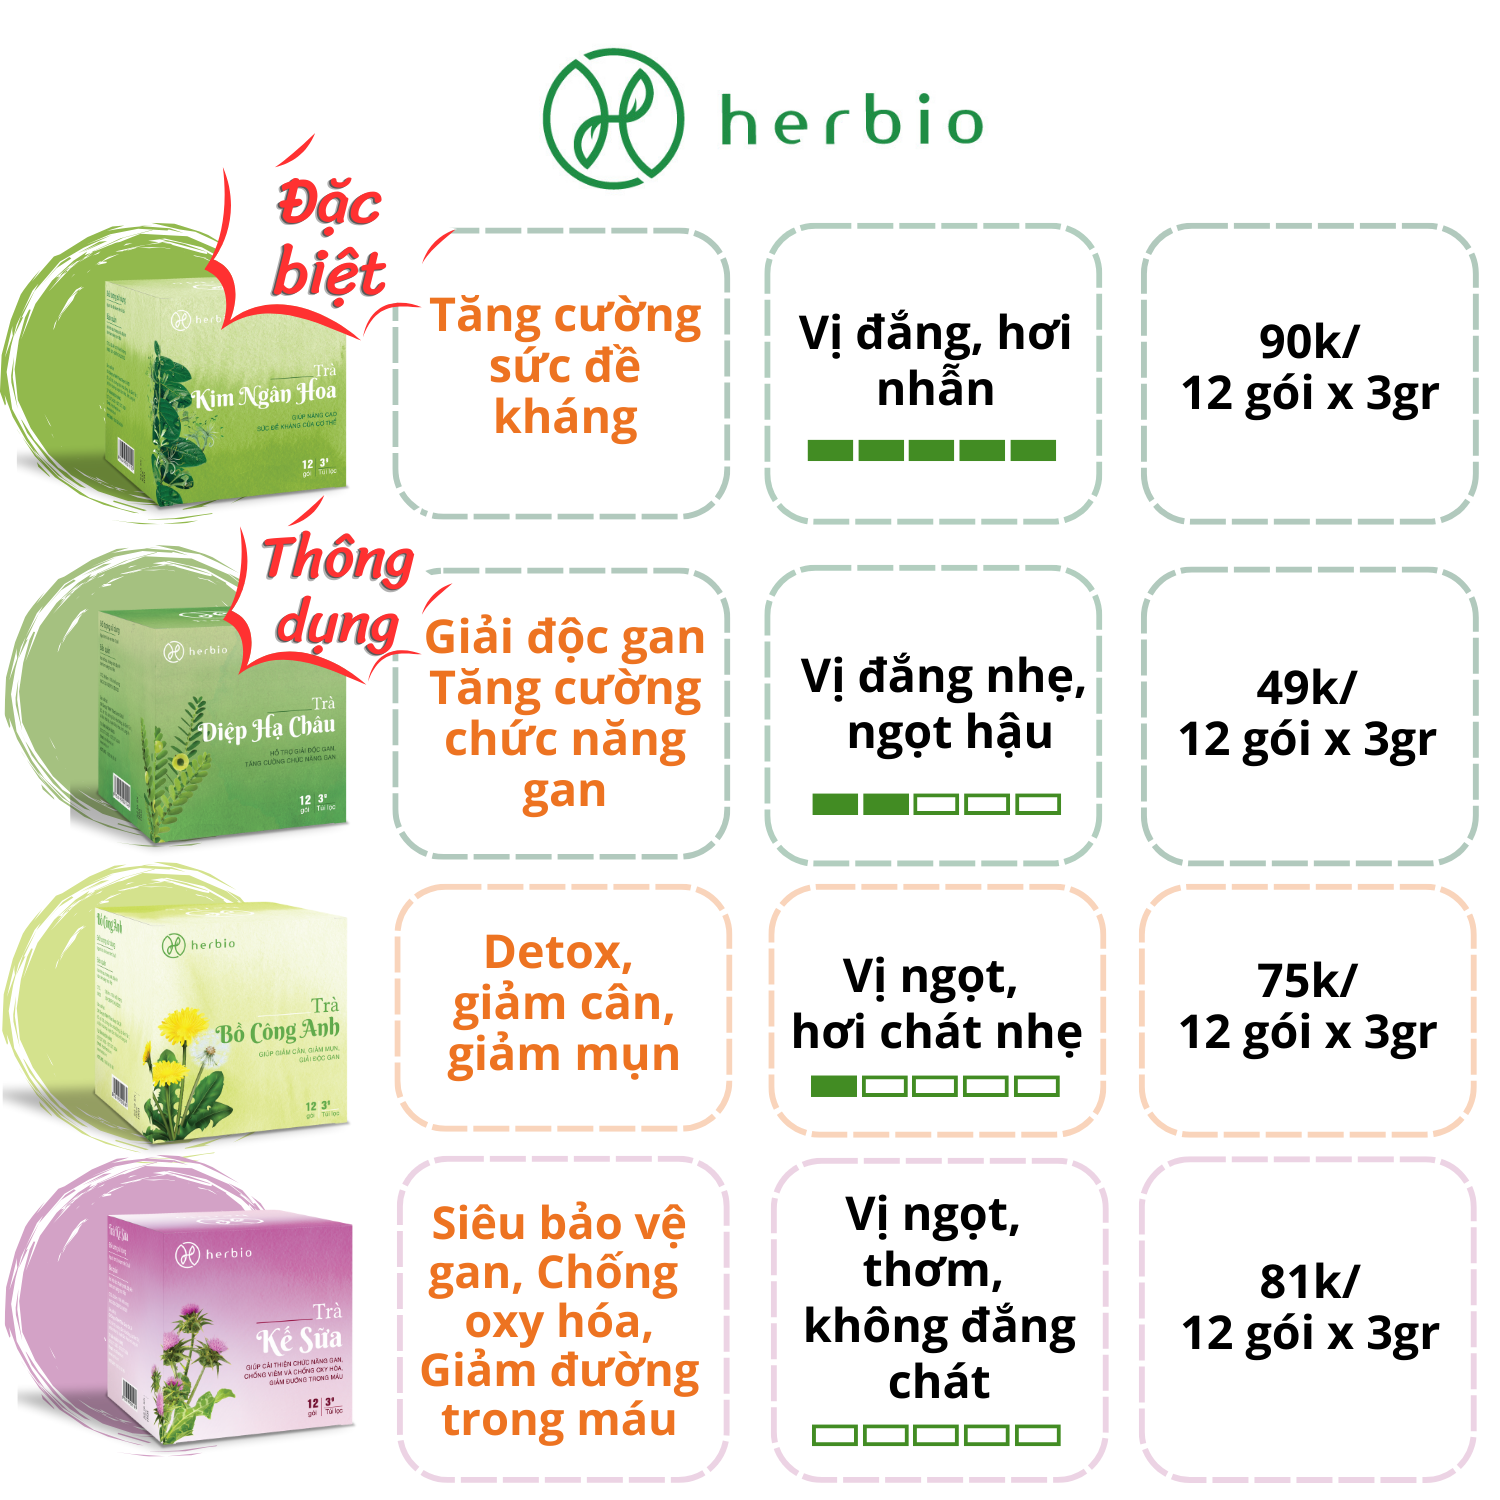 Trà Thảo Mộc Tăng Miễn Dịch Kim Ngân Hoa Herbio - Giúp kháng khuẩn, tăng cường sức đề kháng, bảo vệ cơ thể khỏe mạnh (12 túi lọc x 3gram)